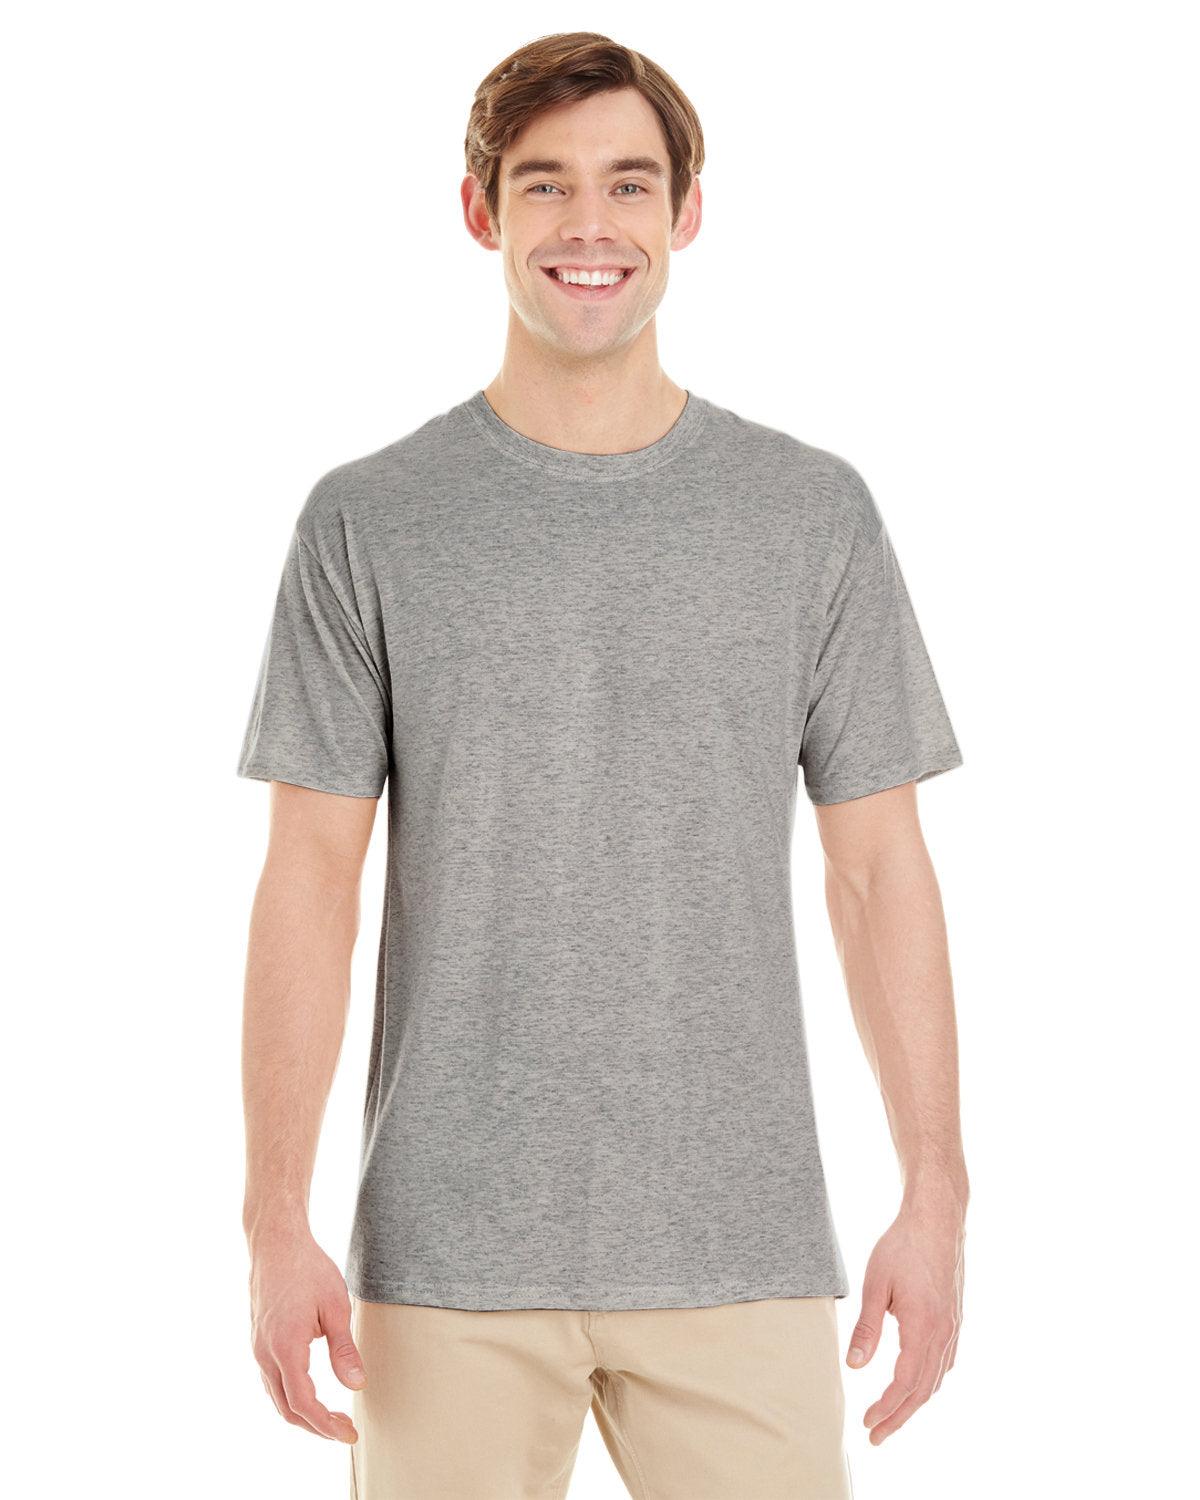 Adult TRI-BLEND T-Shirt - Apparel Globe